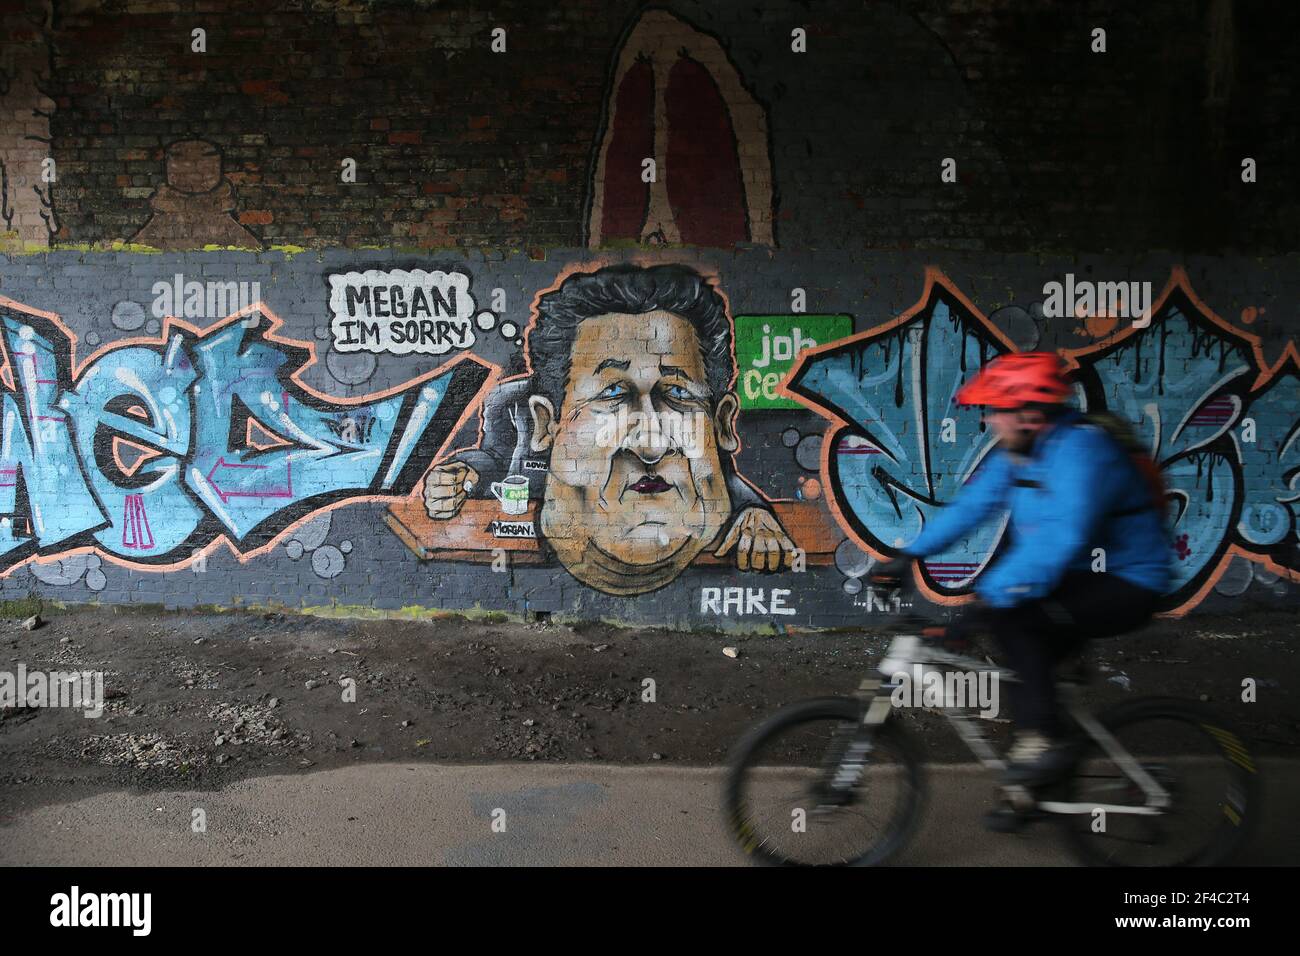 Graffiti-Kunst mit Piers Morgan im Job Center nach dem Verlassen der tv-Show Good Morning Britain. Gloucestershire. VEREINIGTES KÖNIGREICH Stockfoto